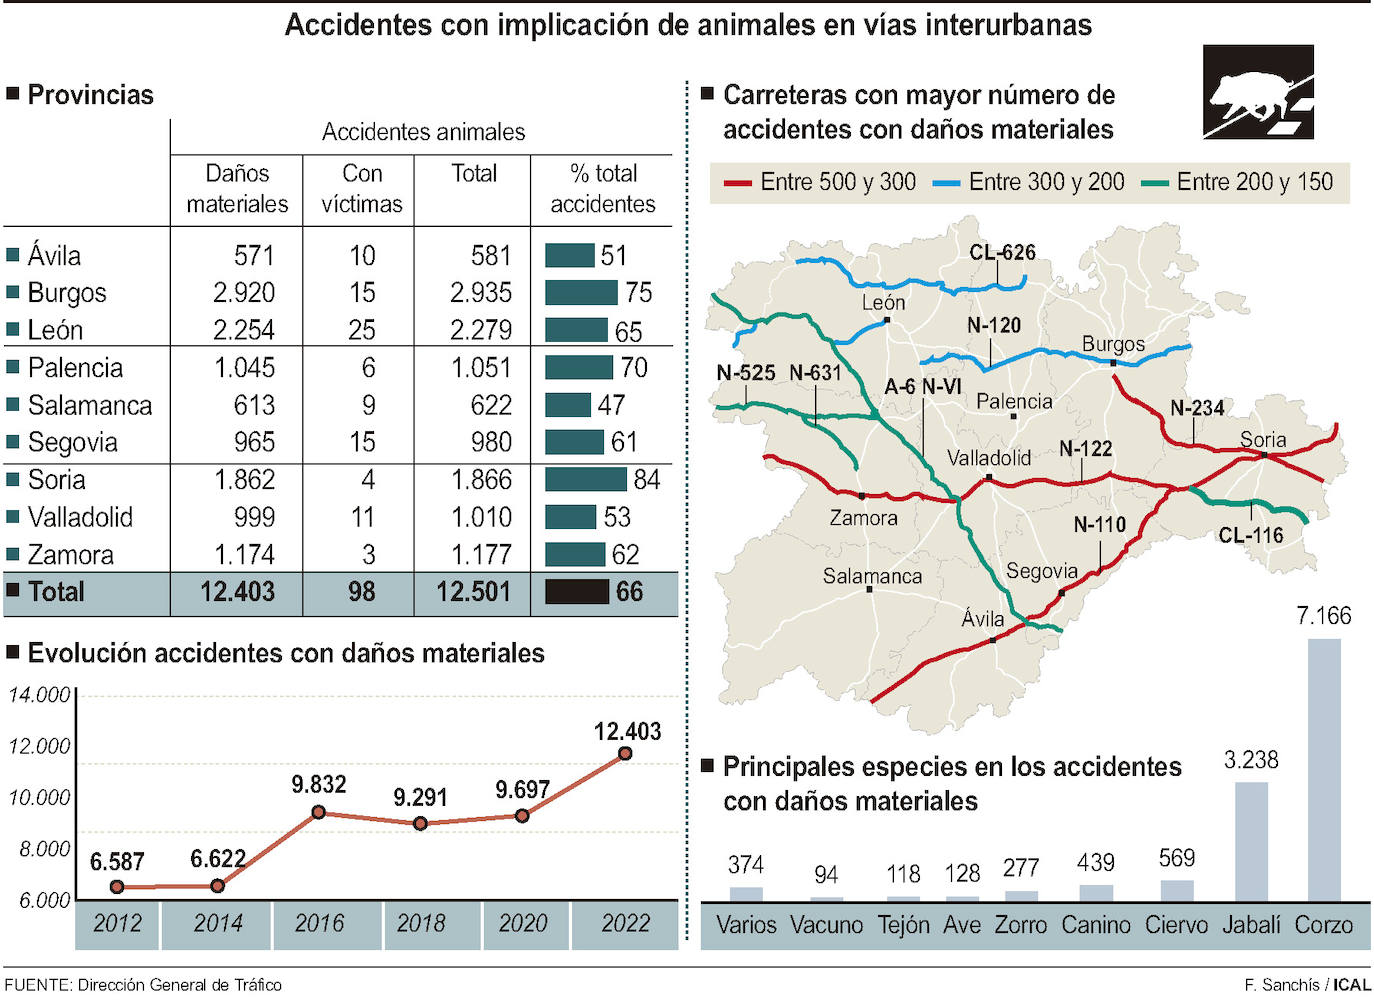 Las carreteras de Salamanca superan la cifra récord de 600 accidentes con animales